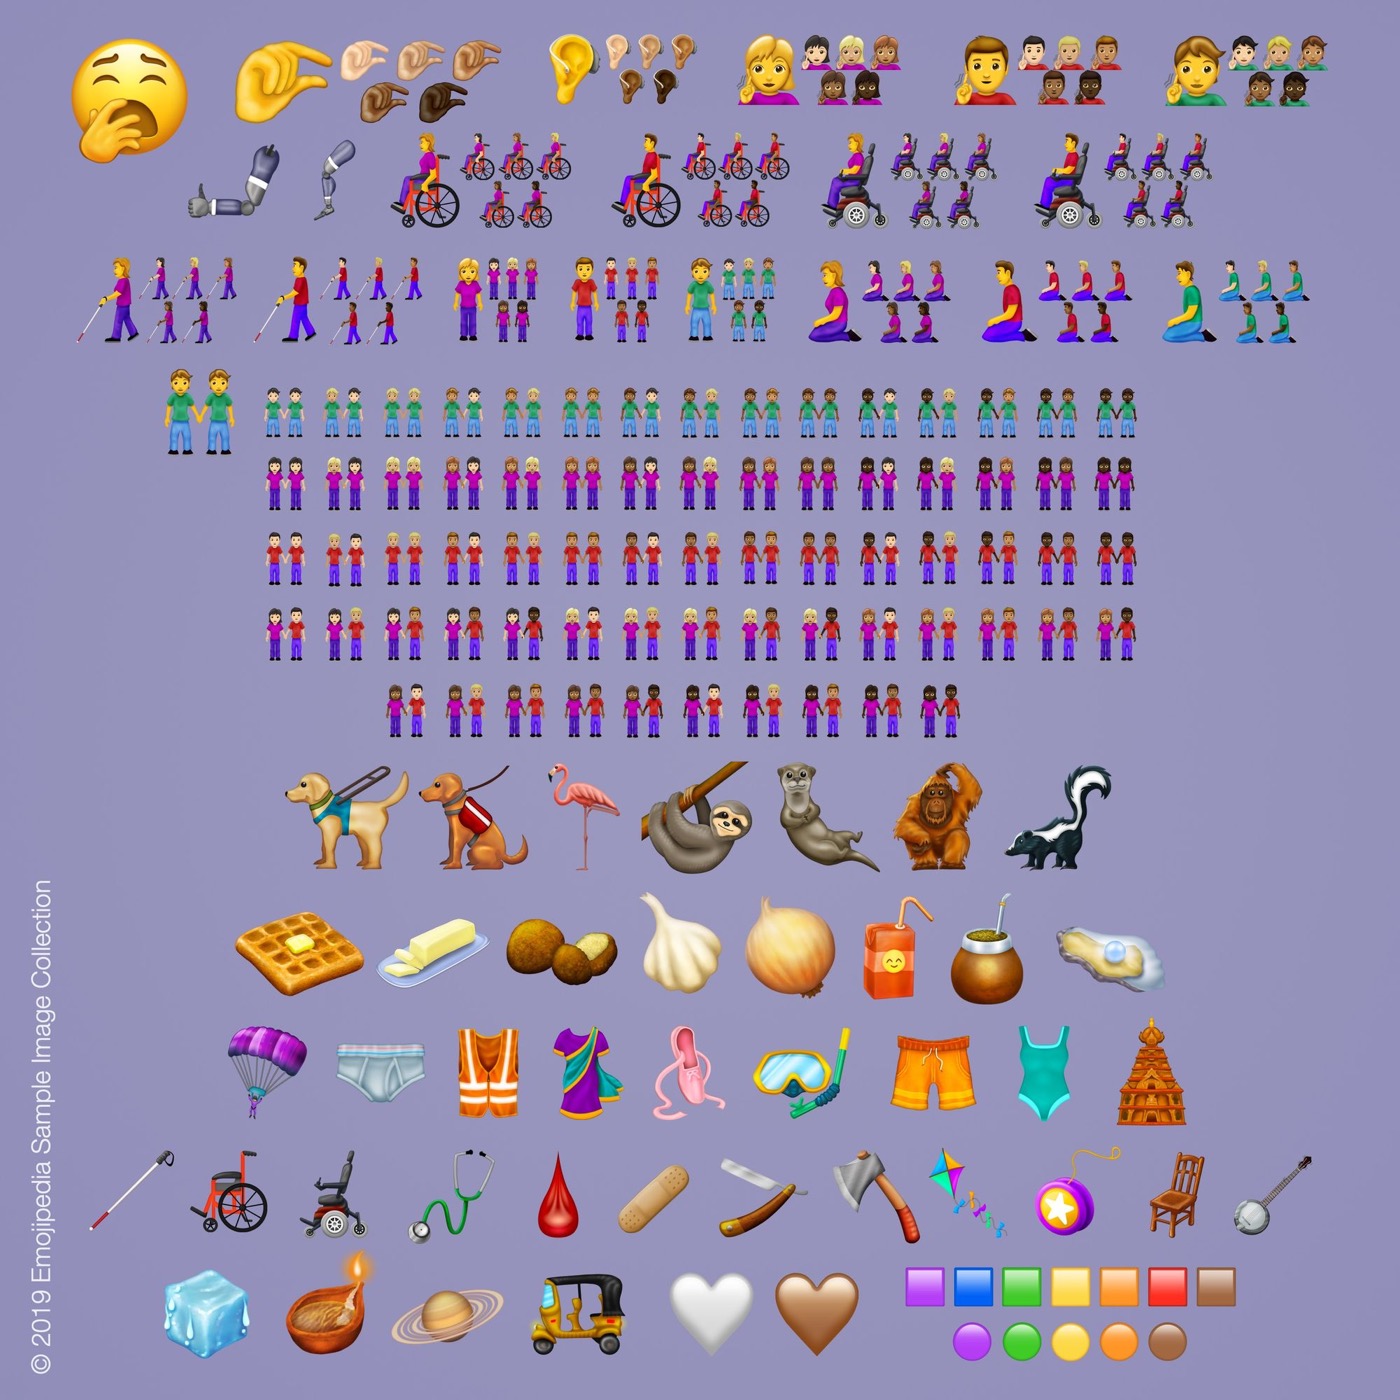 ユニコードコンソーシアム、新しい絵文字セット｢Emoji 12.0｣を正式に発表 ｰ 全230種類